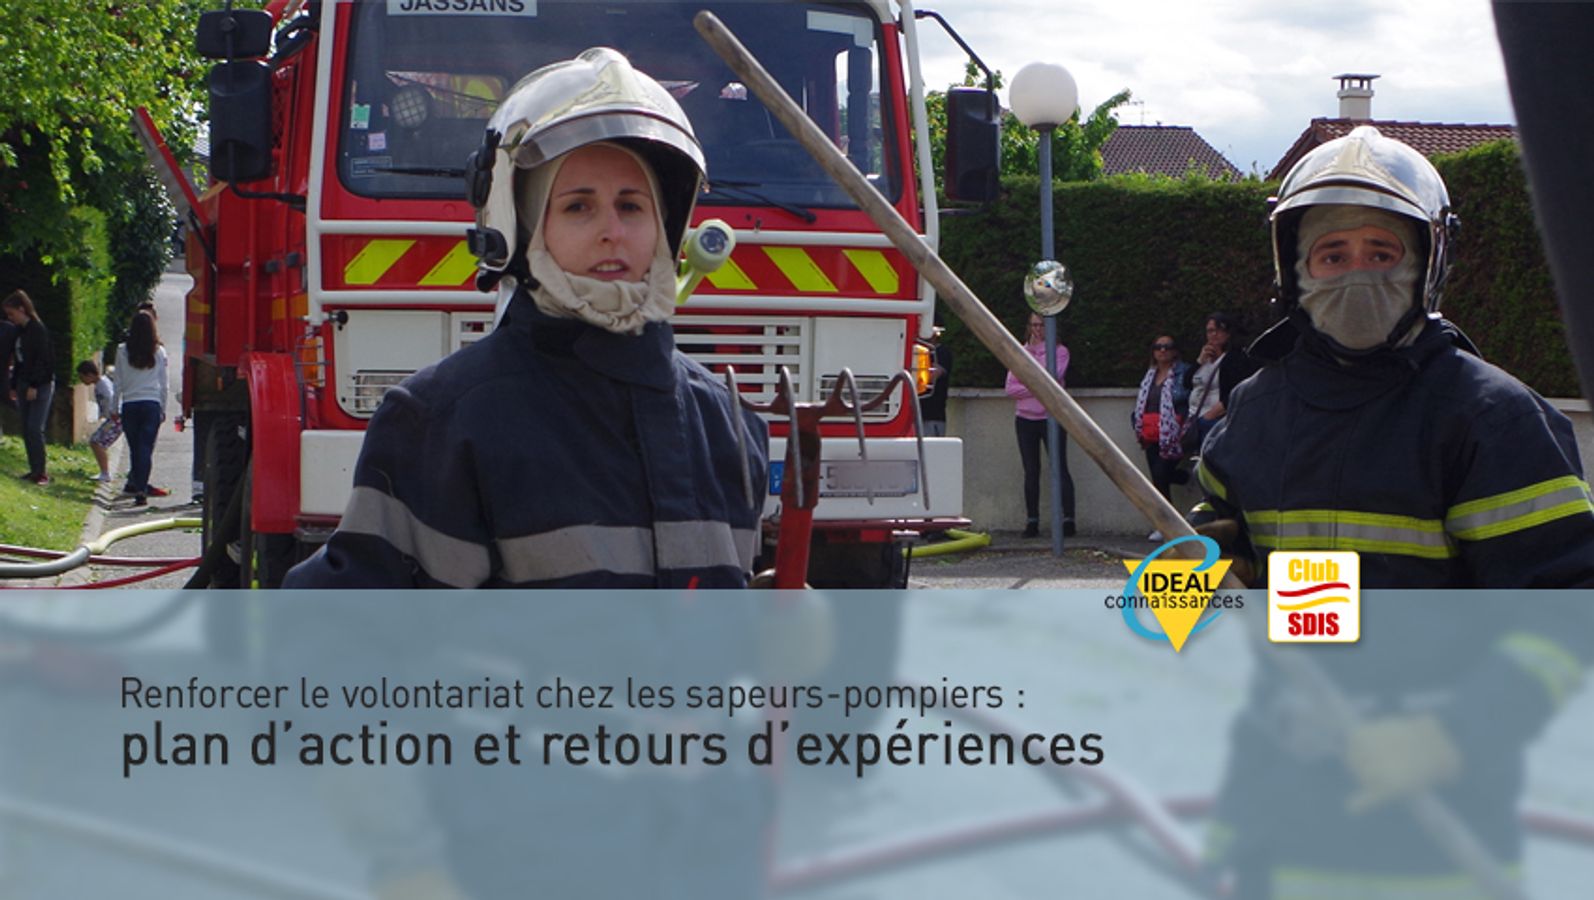 Renforcer le volontariat chez les sapeurs-pompiers : plan d'action et retours d'expériences